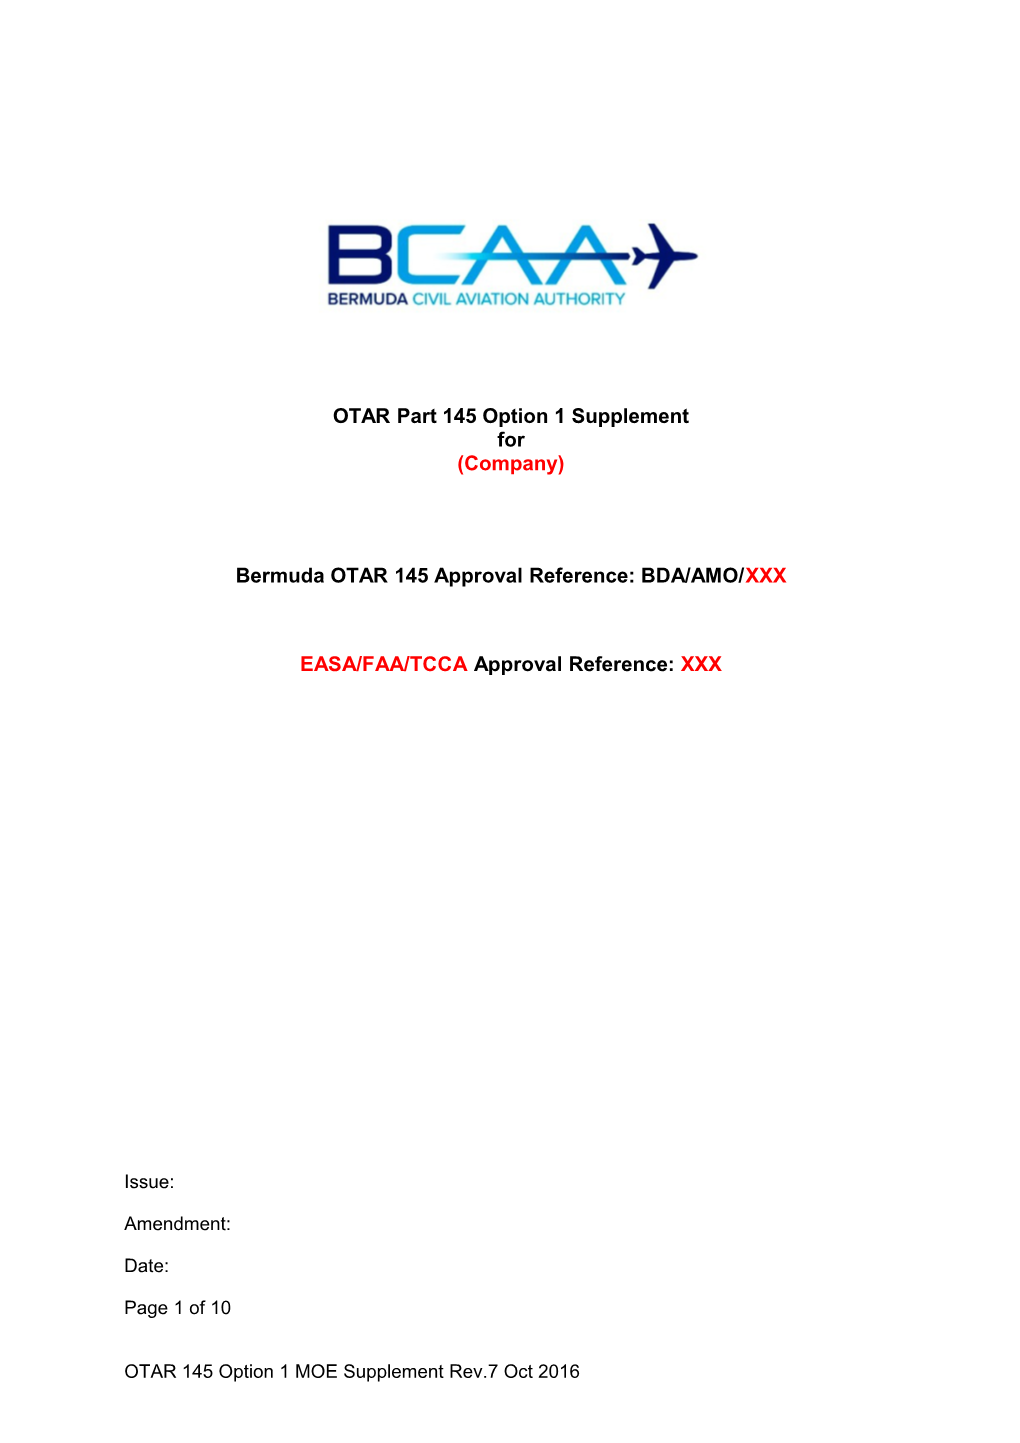 Bermuda OTAR 145 Approval Reference: BDA/AMO/XXX